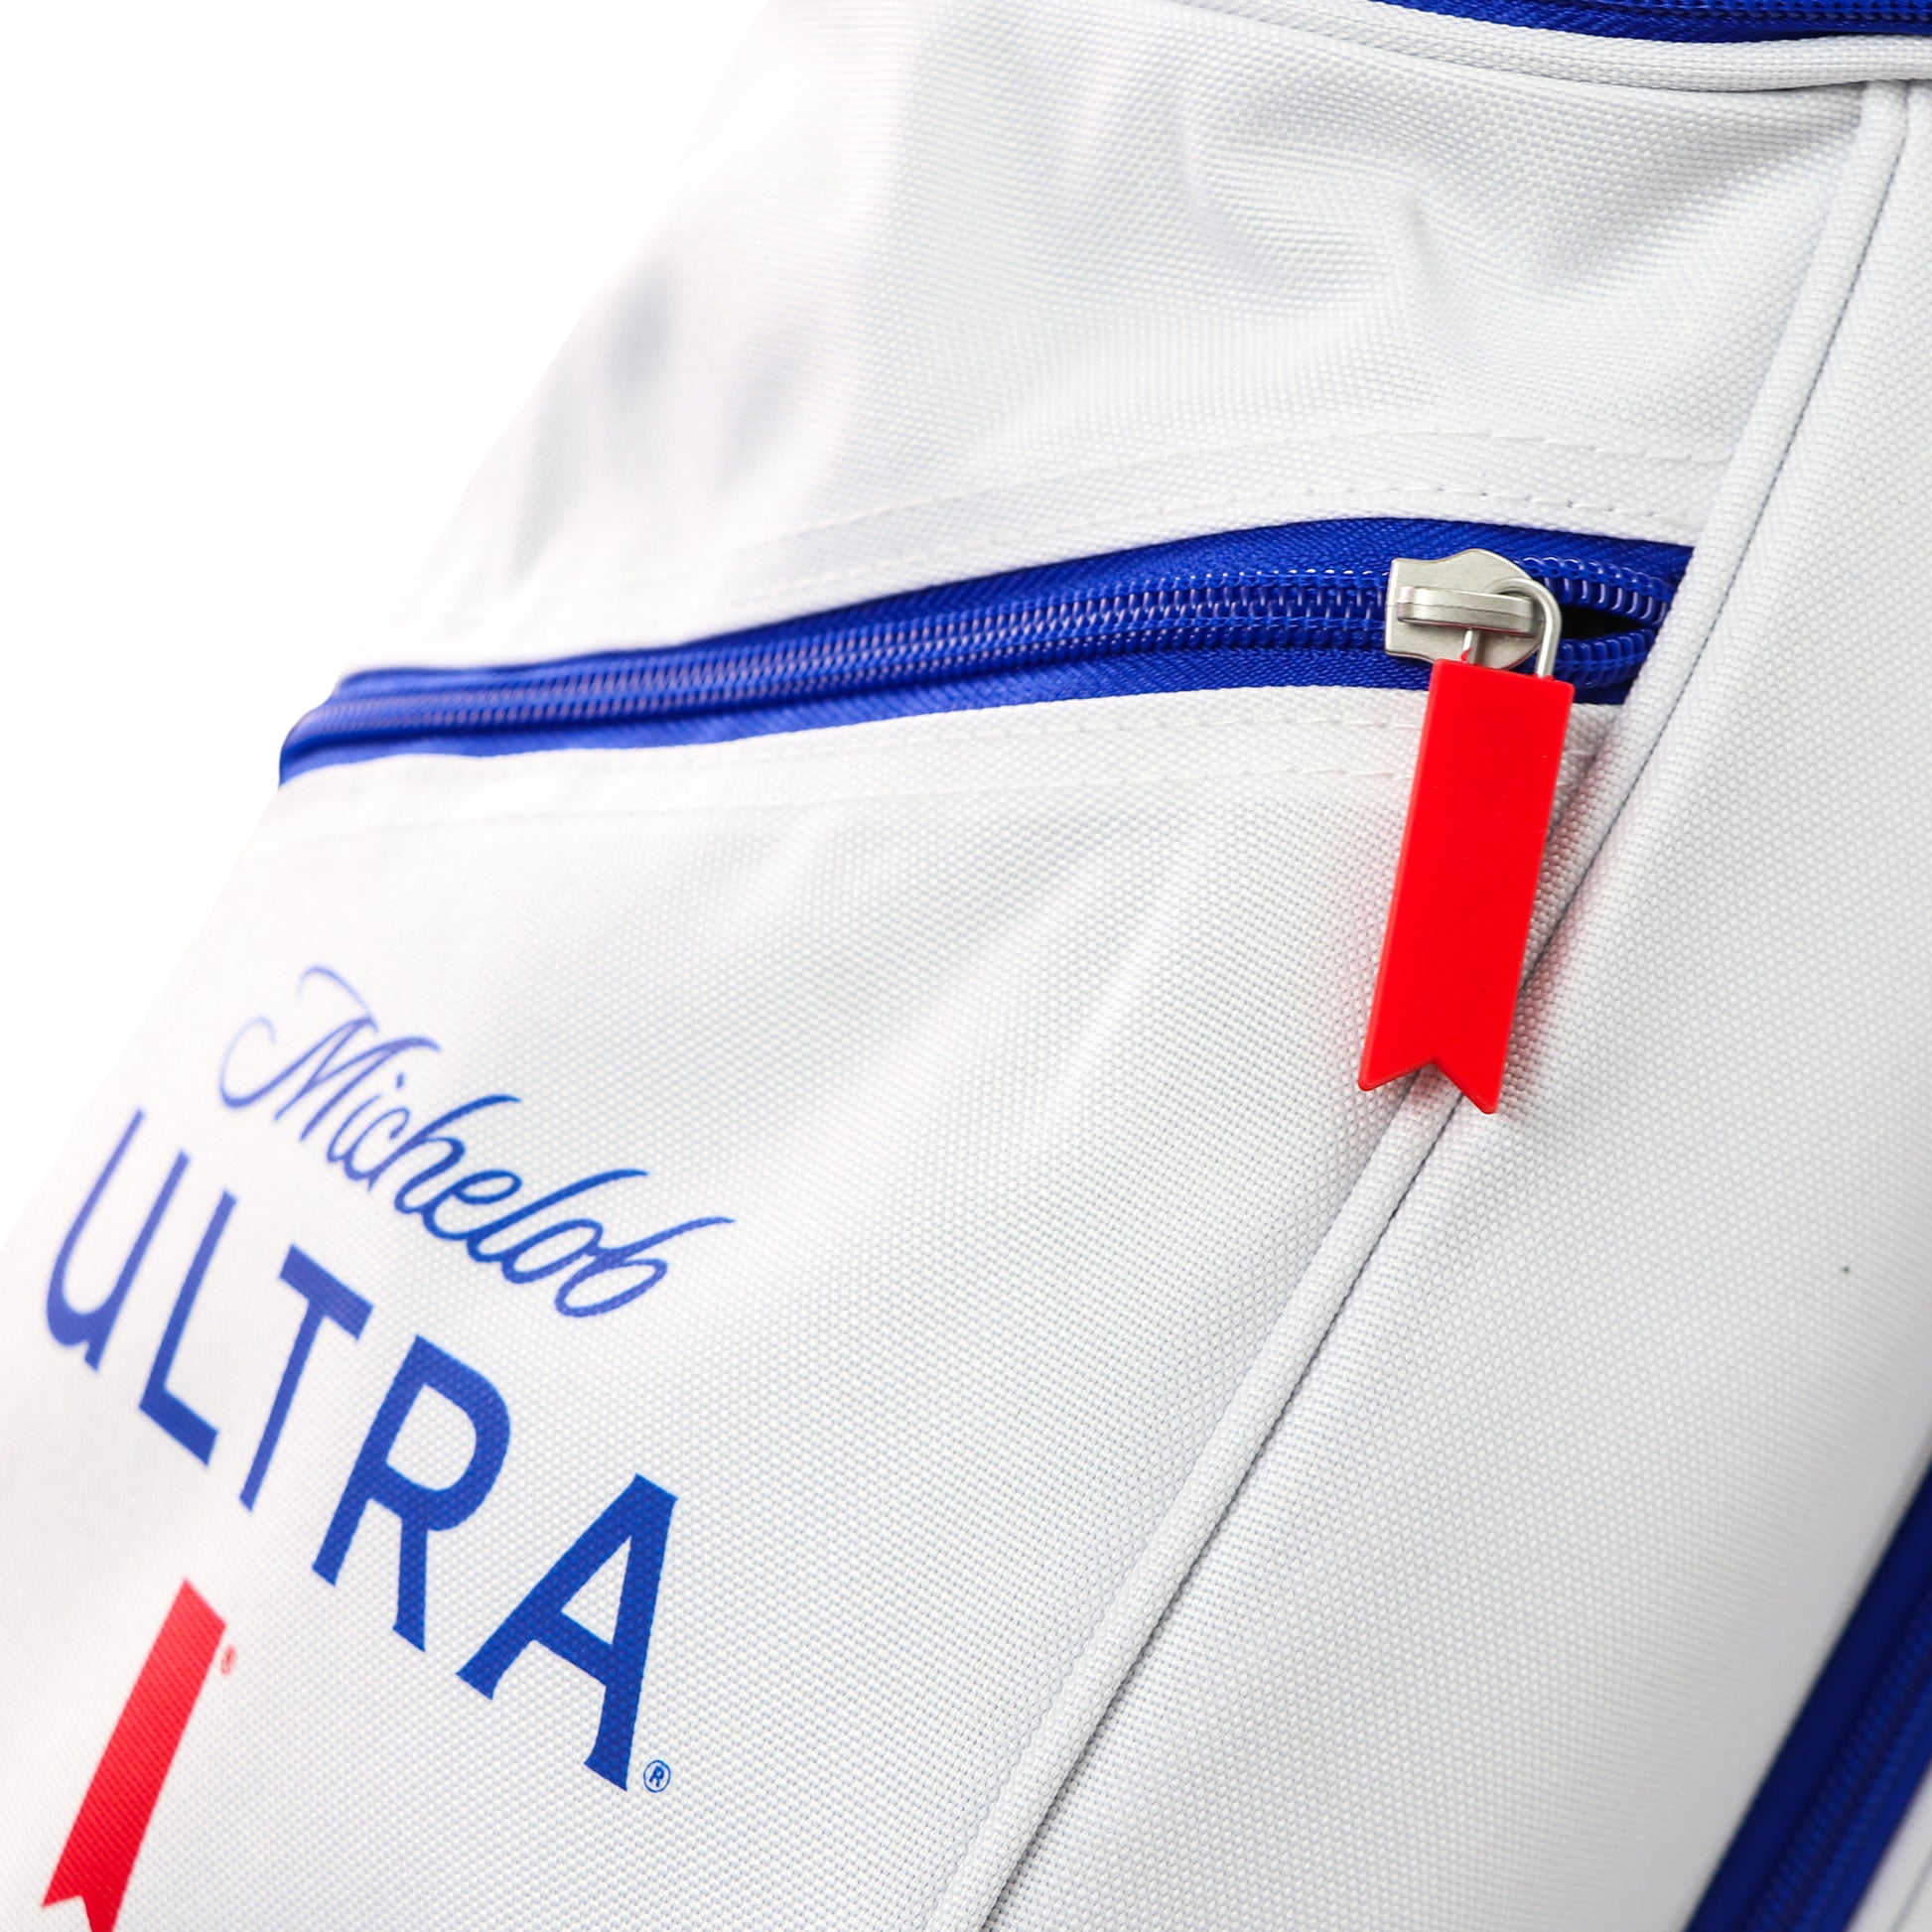 Michelob ULTRA golf bag close up of zipper detail